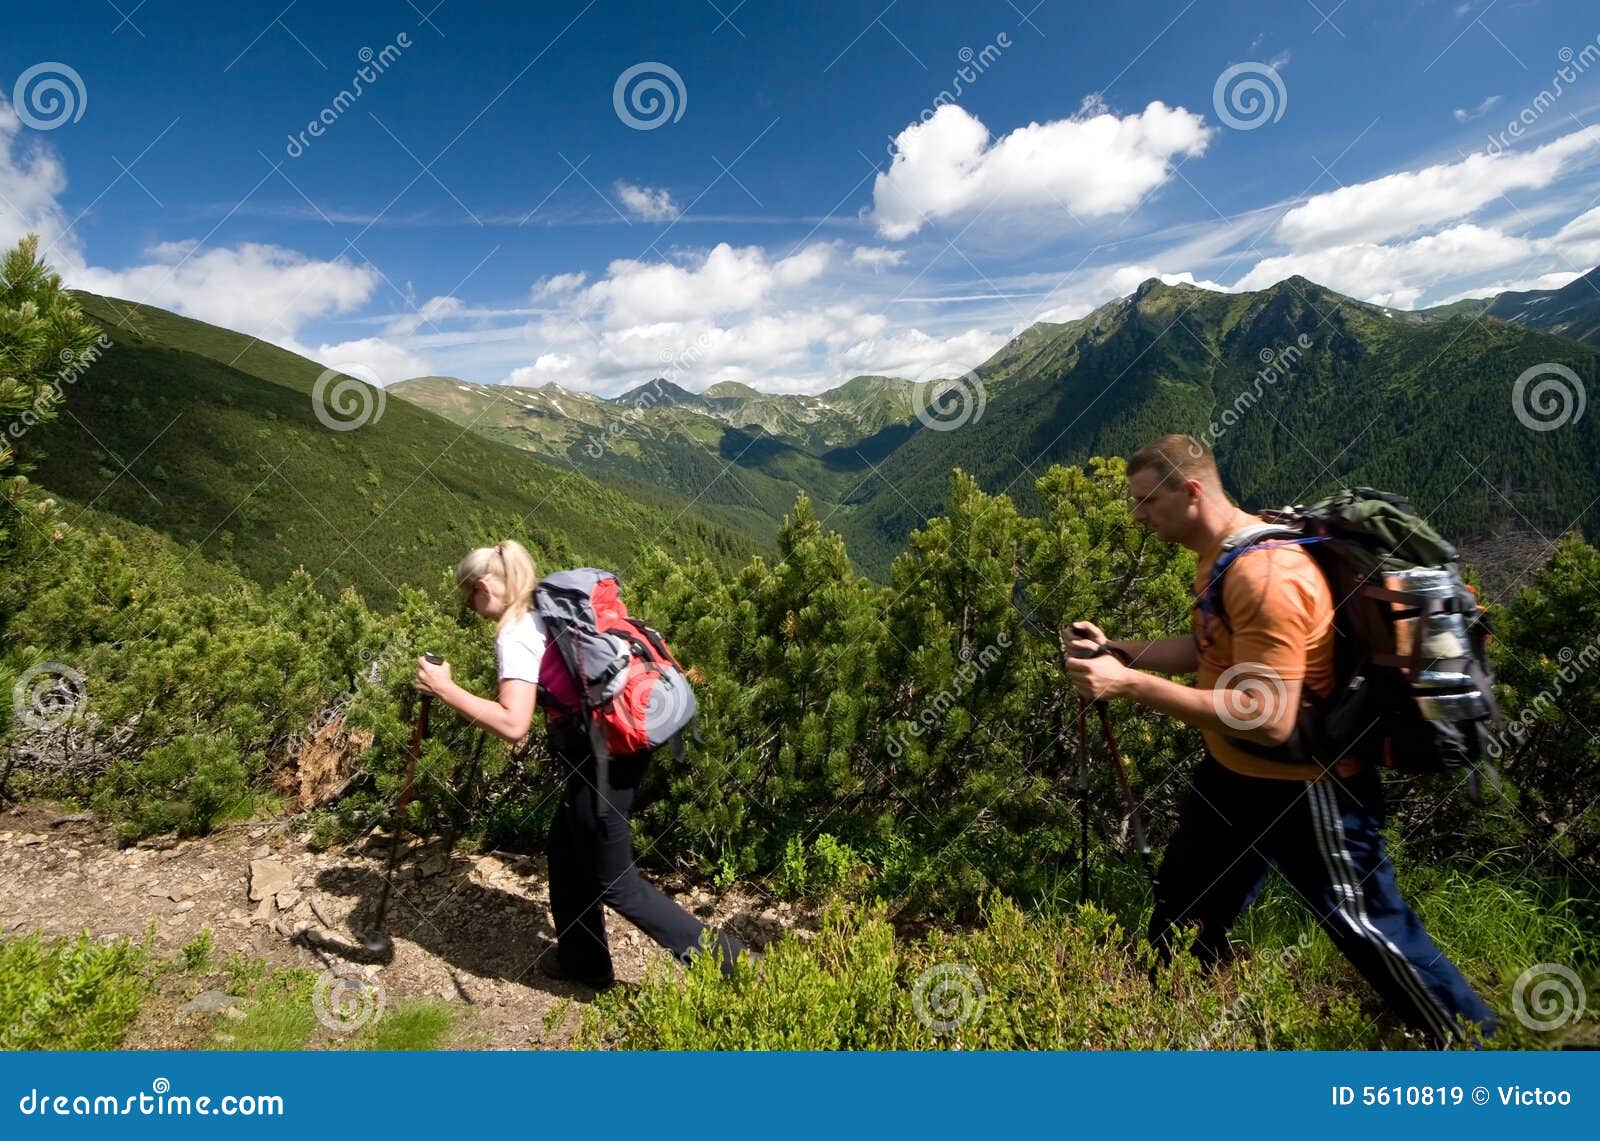 nordic walking in tatra mountains